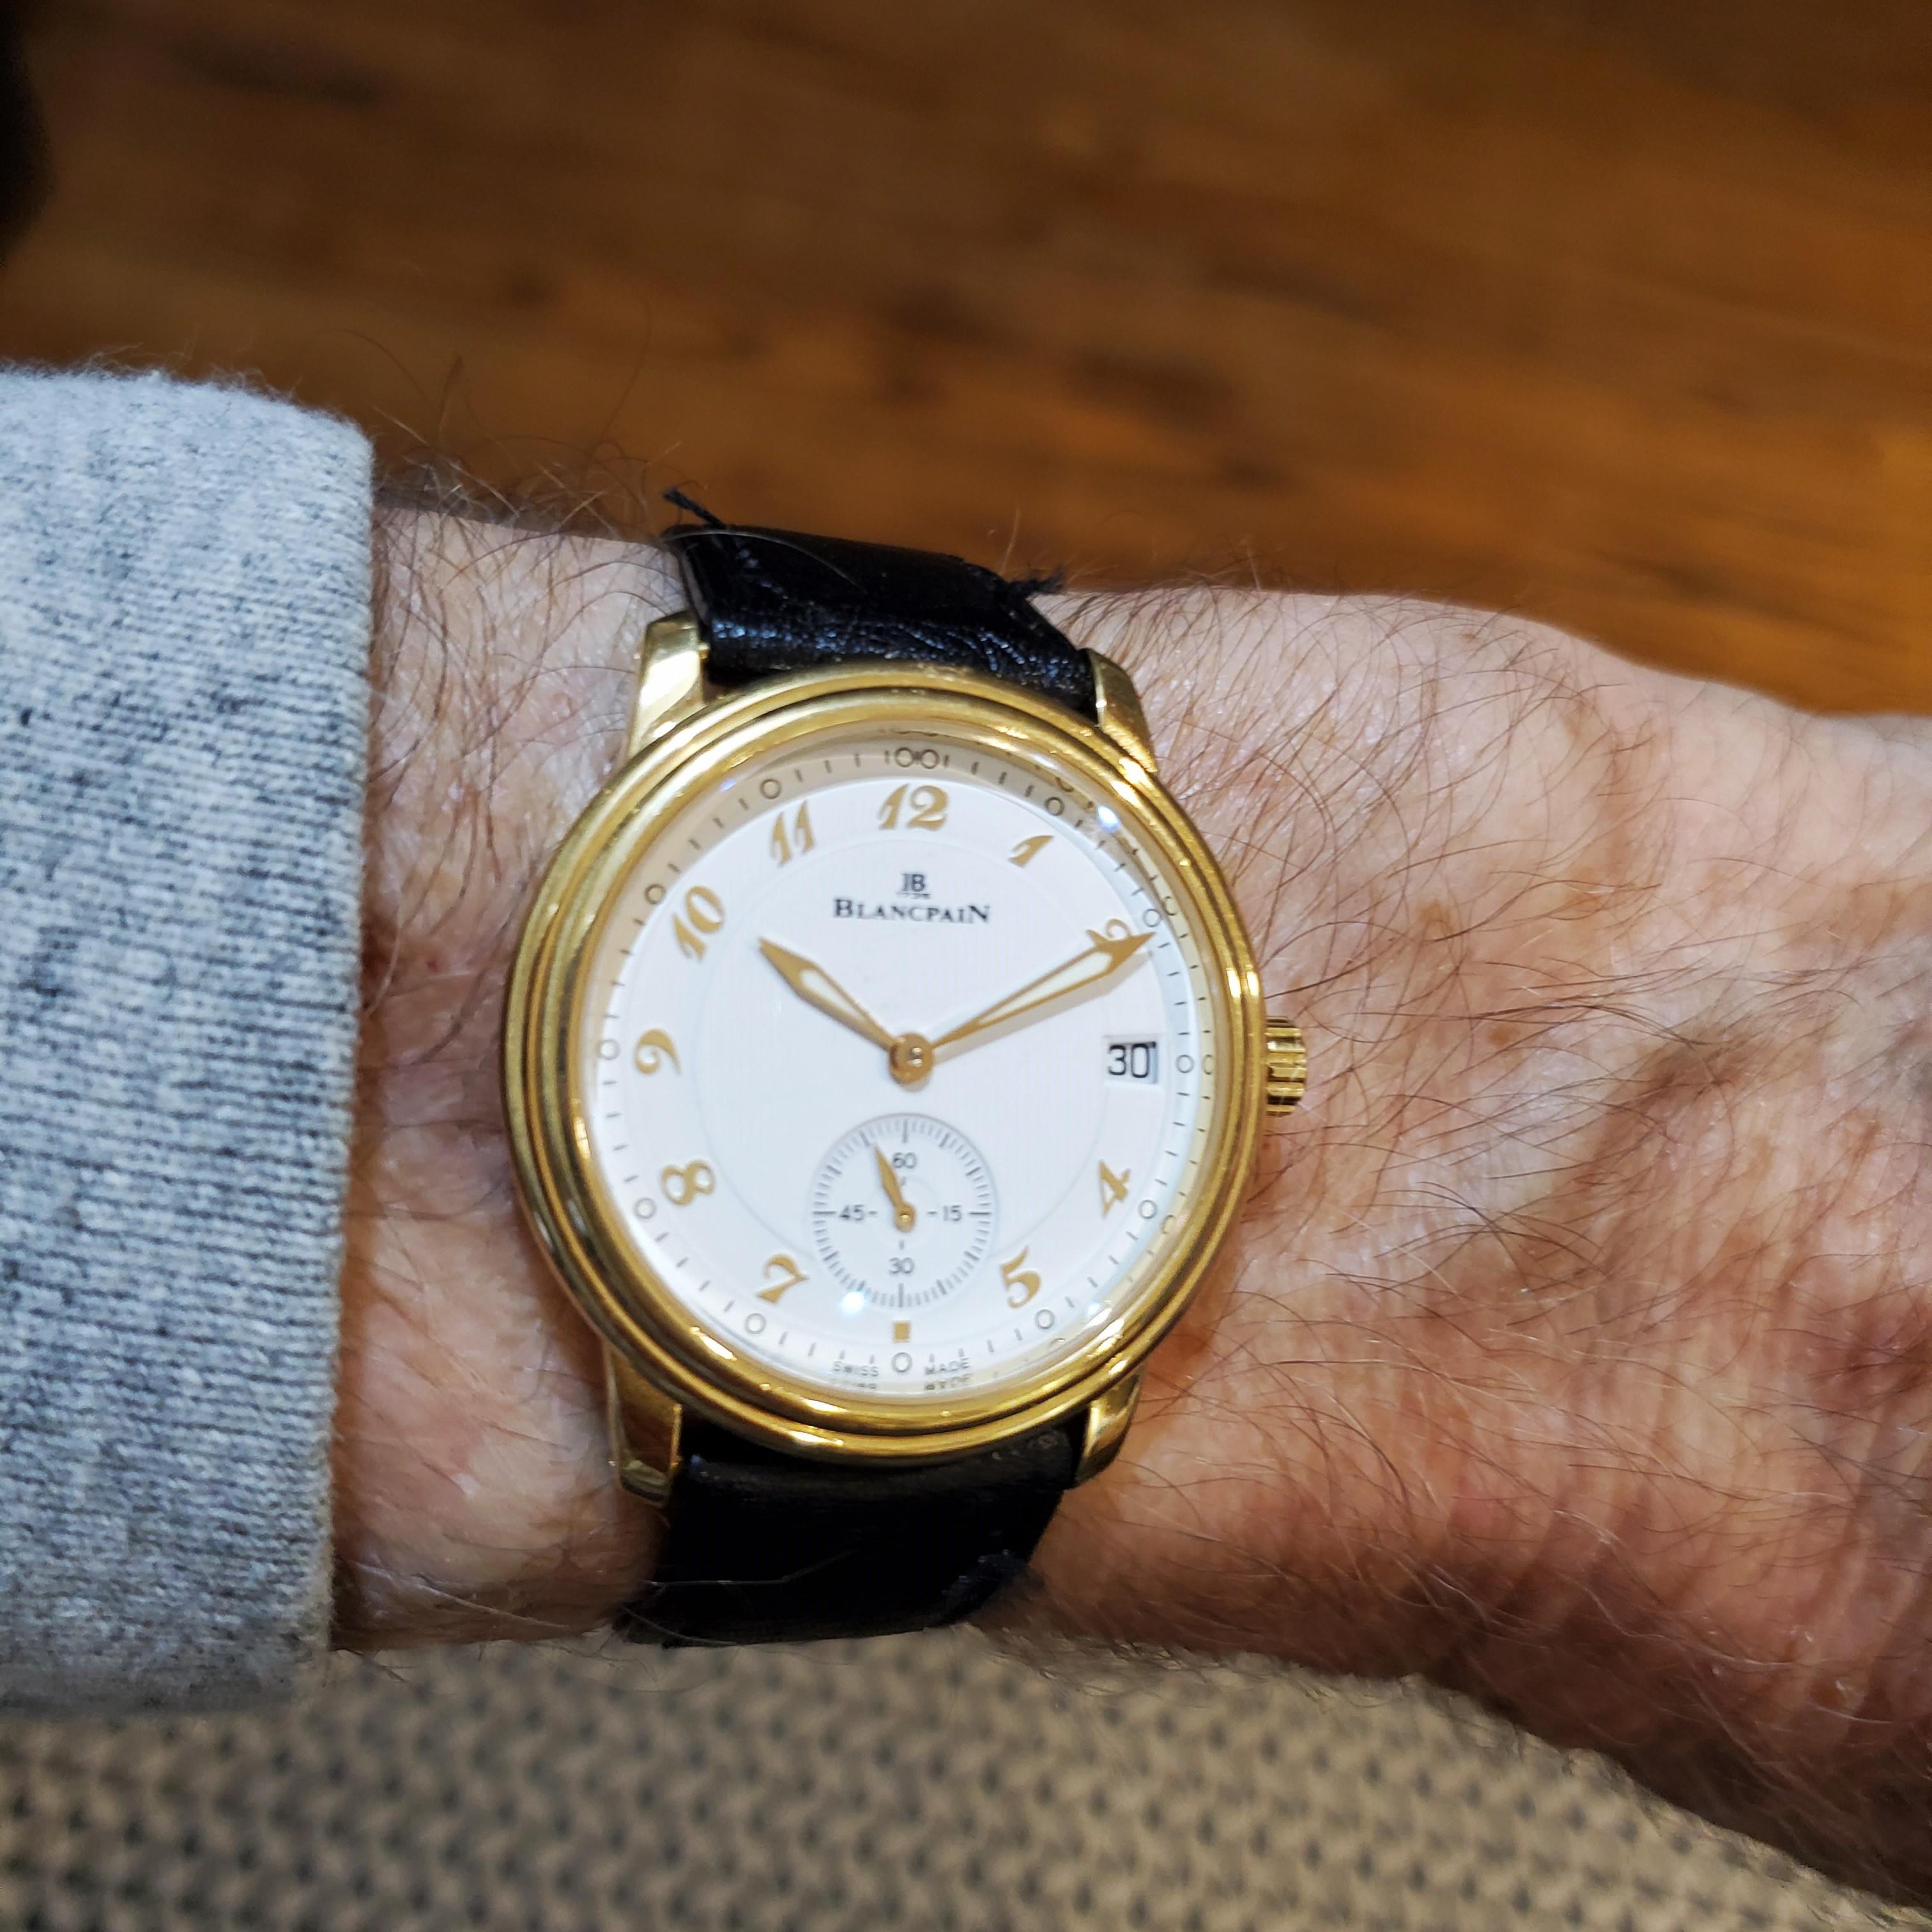 Blancpain Limited Edition Extra Slim Automatic ; avec cadran Breguet en porcelaine.  La montre est fabriquée dans un boîtier en or jaune 18 carats de 36 mm avec verre saphir et trotteuse à 6 heures.  L'étui est doté d'une boucle à double nervure. La